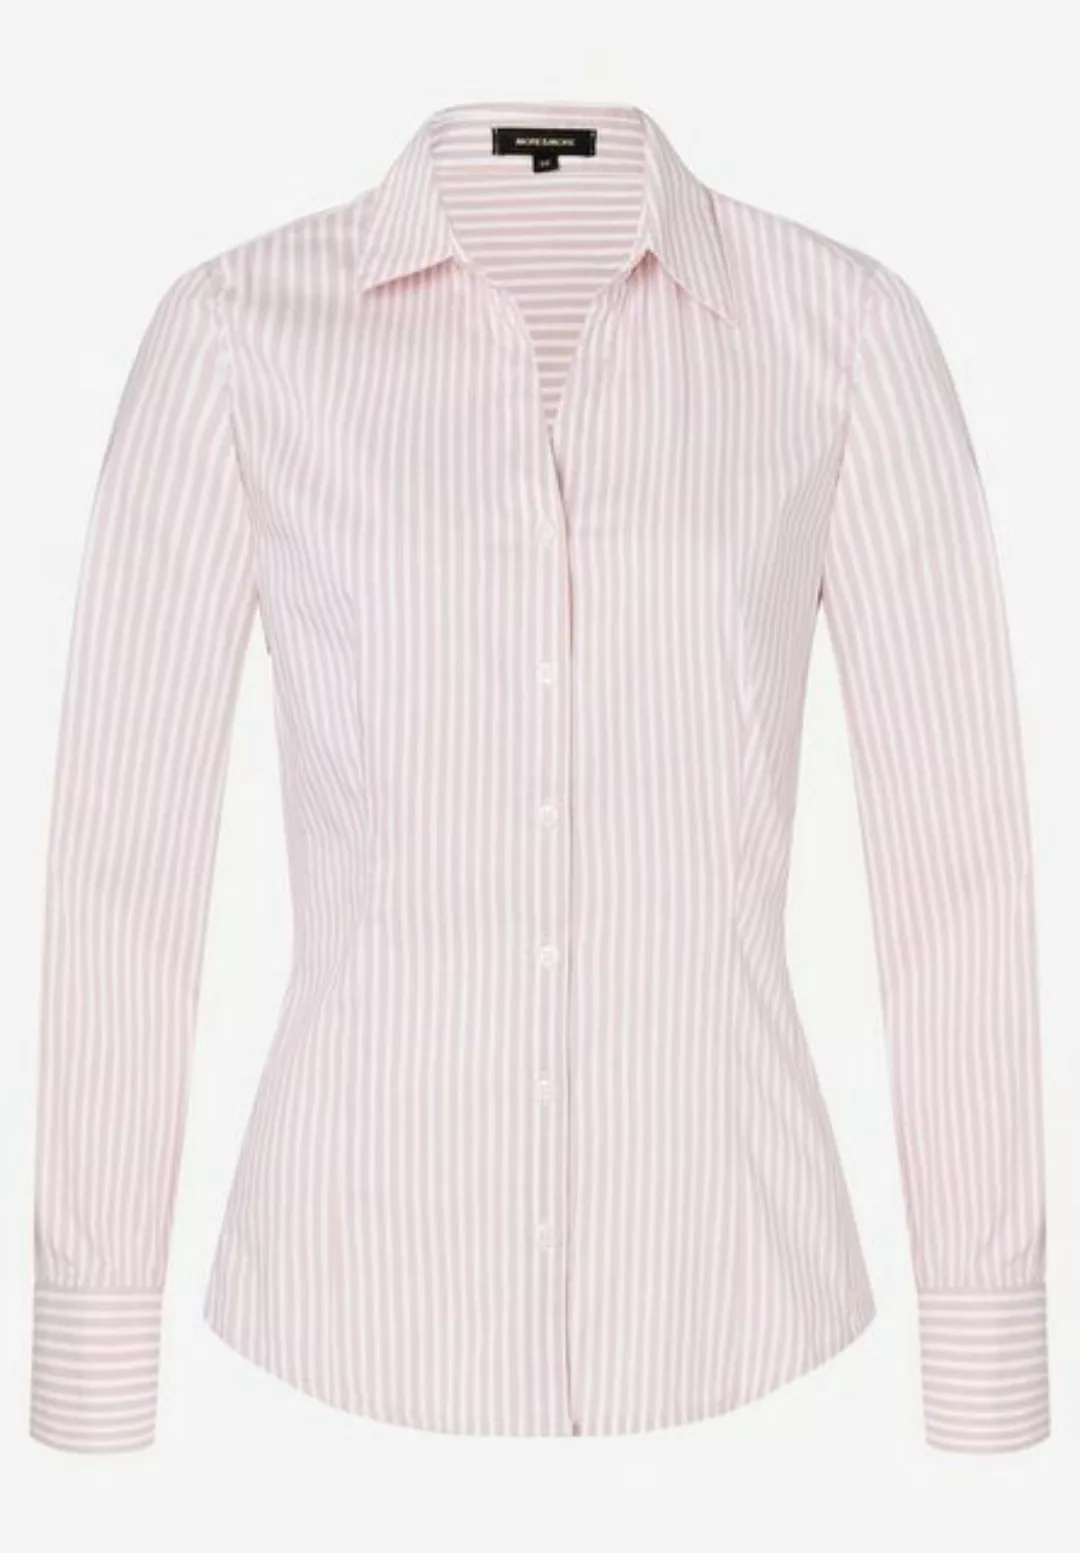 Hemdbluse mit Streifen, rosa/weiß, Frühjahrs-Kollektion günstig online kaufen